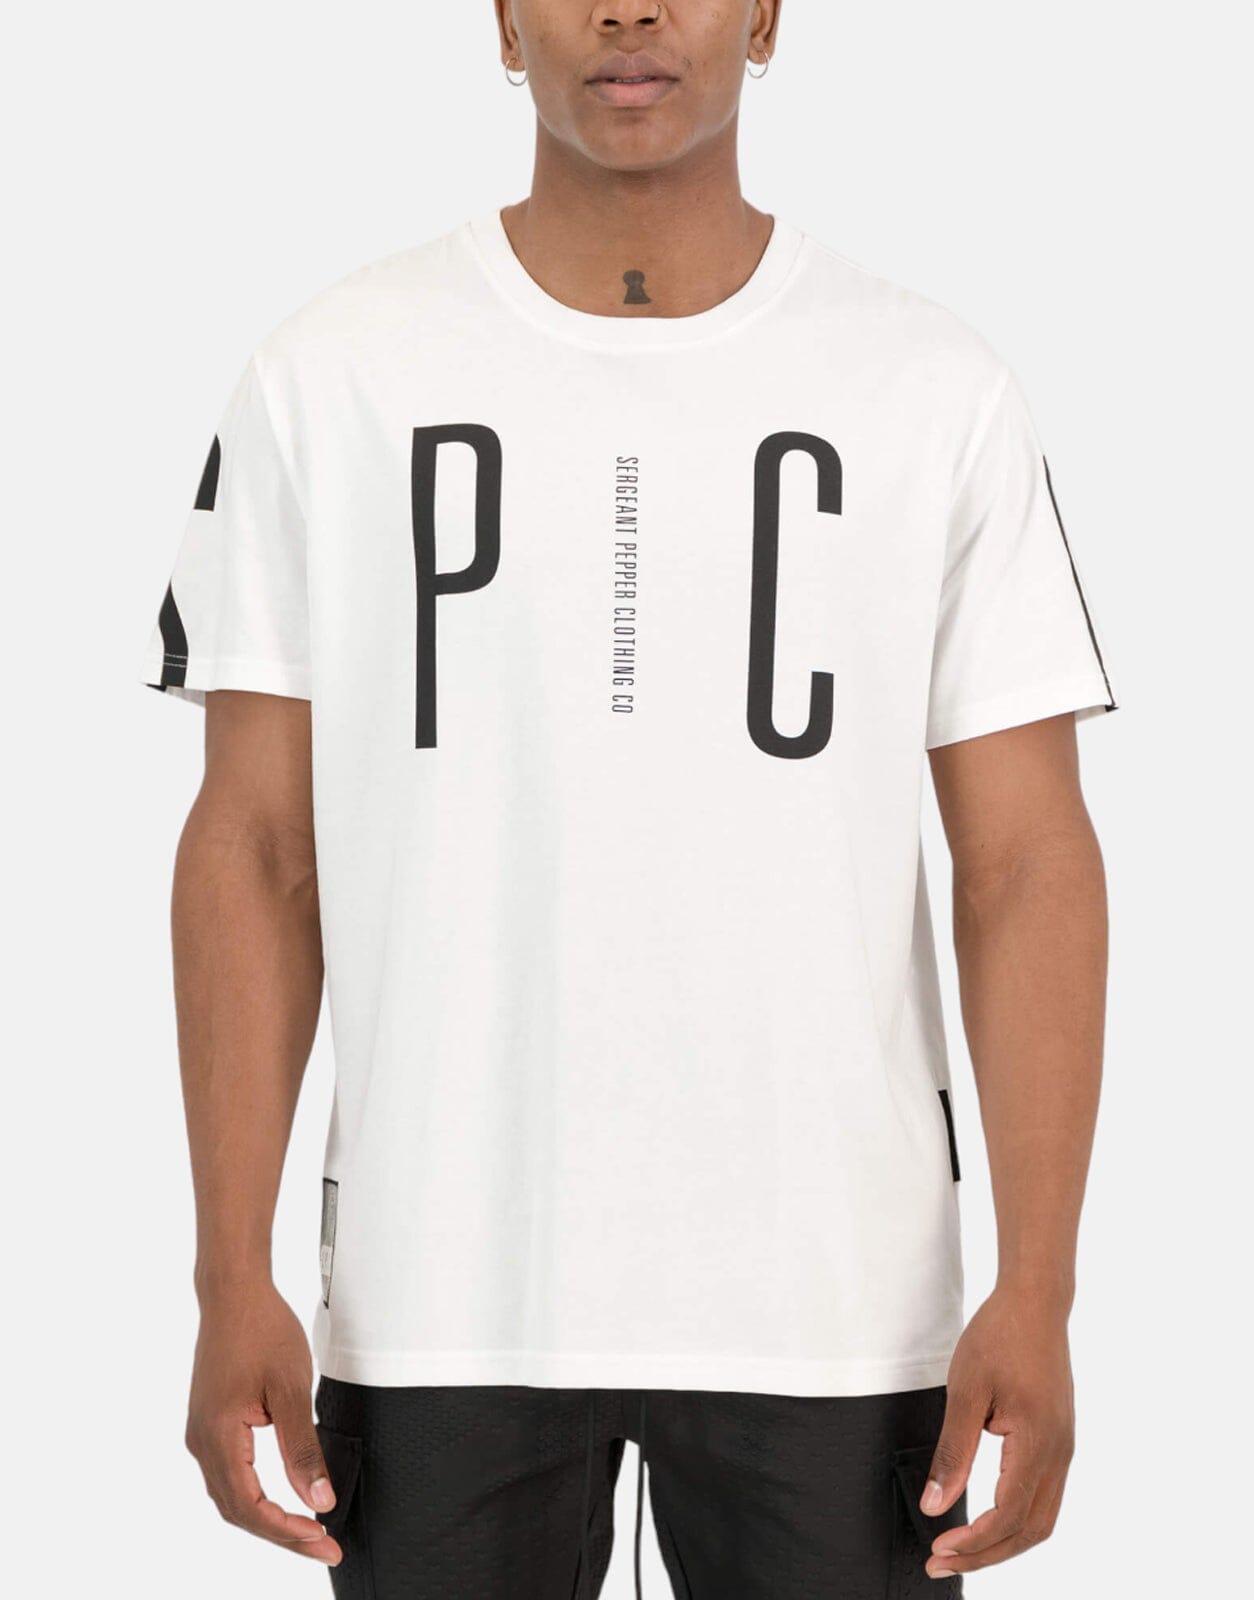 SPCC Devlin White T-Shirt, L / White